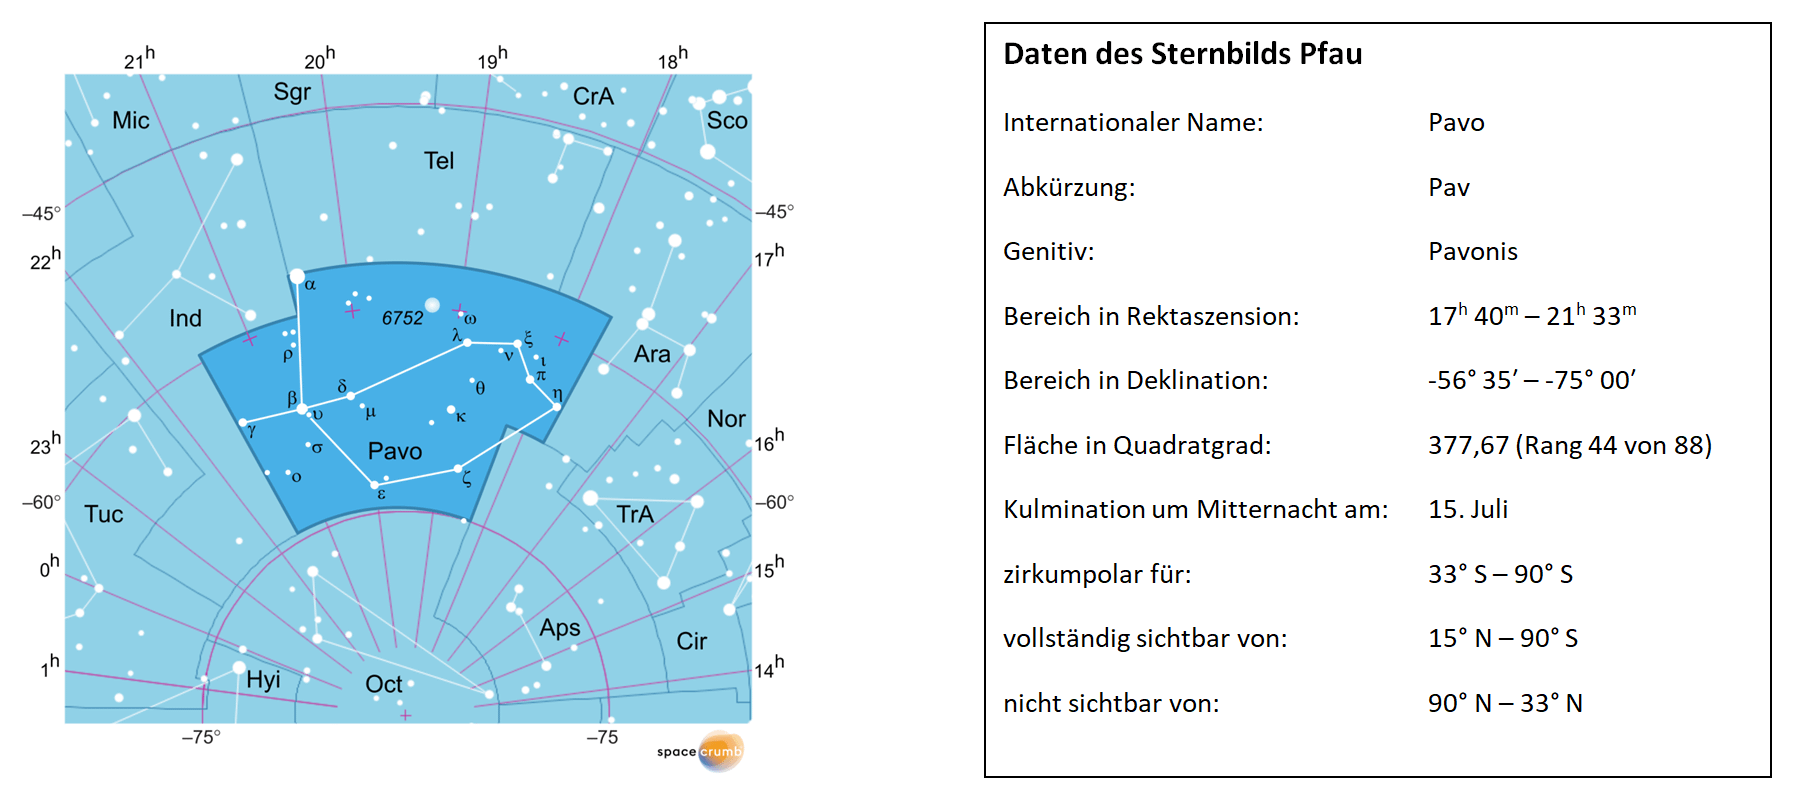 Links zeigt eine mit Koordinaten versehene Karte eines Himmelsausschnitts weiße Sterne auf hellblauem Hintergrund. Die Fläche, die das Sternbild Pfau einnimmt, ist dunkelblau hervorgehoben. Eine Tabelle rechts gibt wichtige Daten des Sternbilds Pfau an.